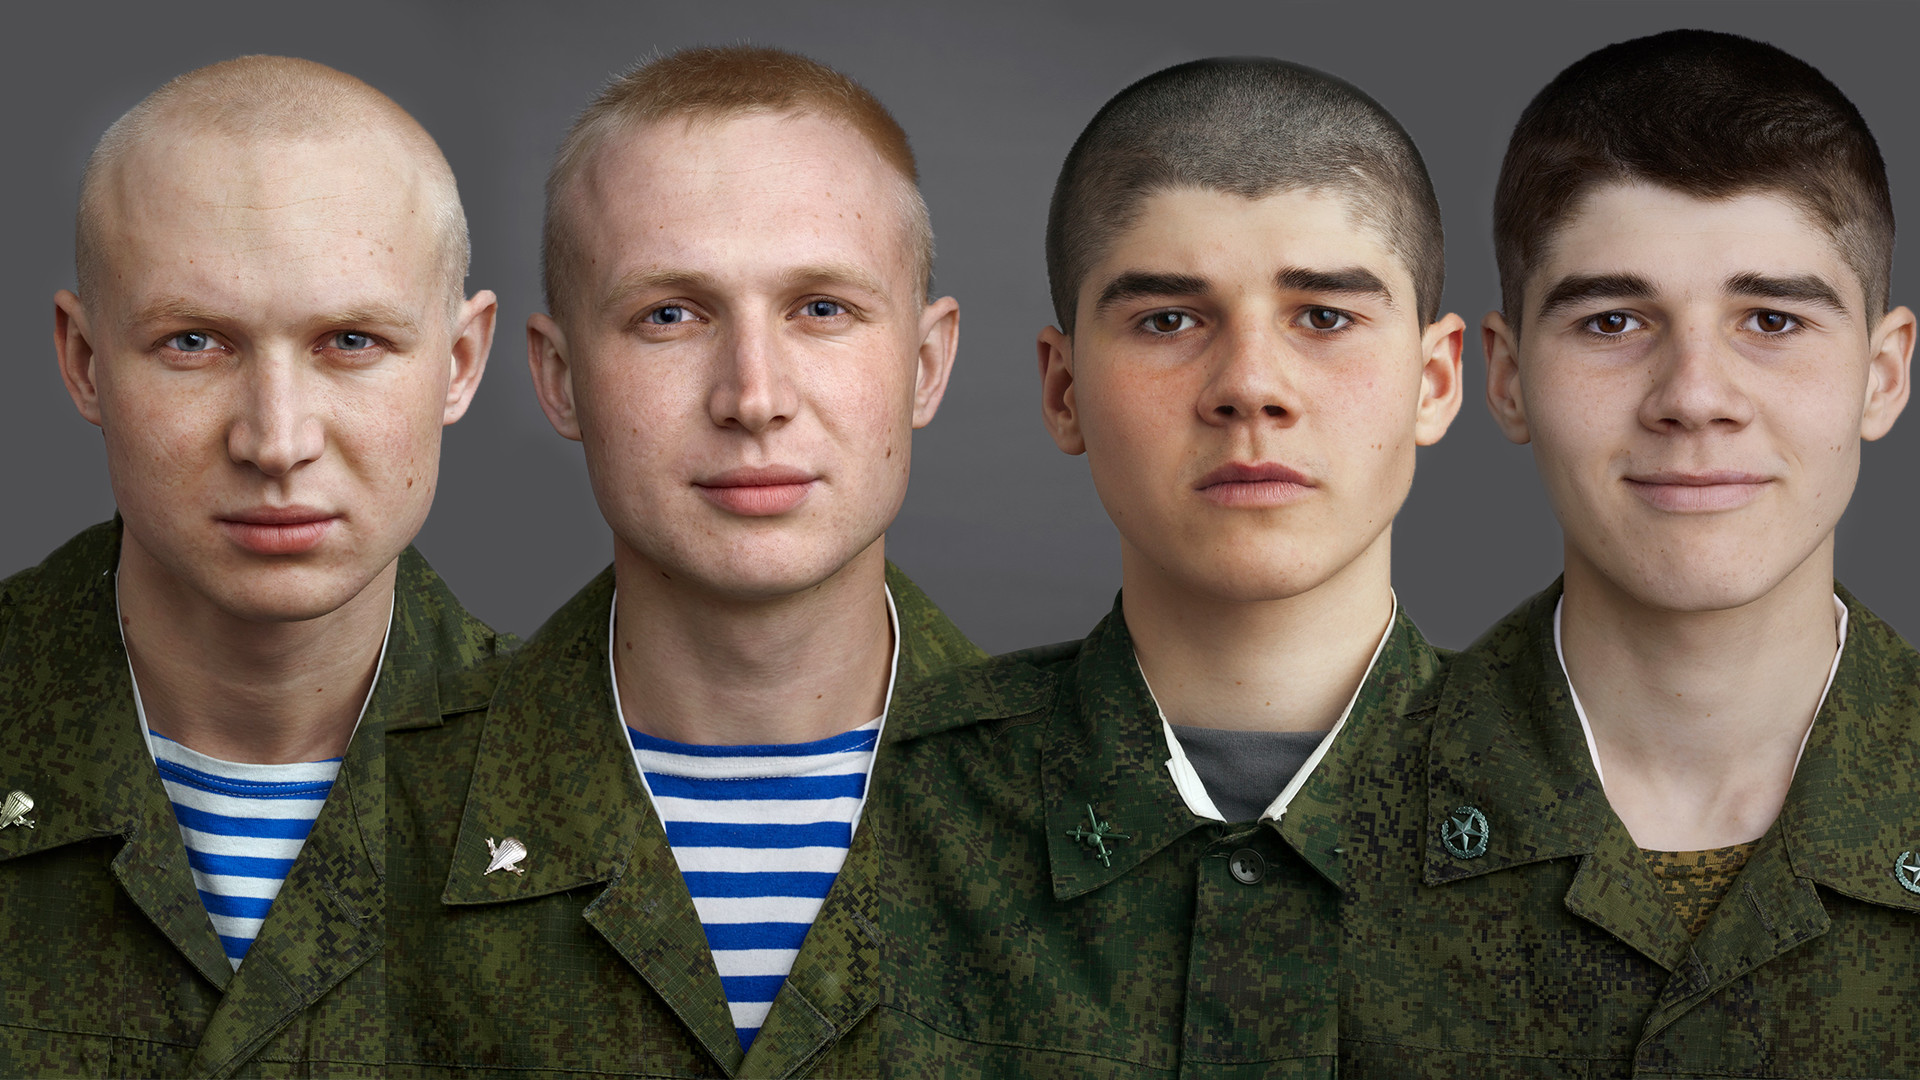 ビフォーアフター ロシア軍に従軍後 人はどう変わるのか 写真特集 ロシア ビヨンド